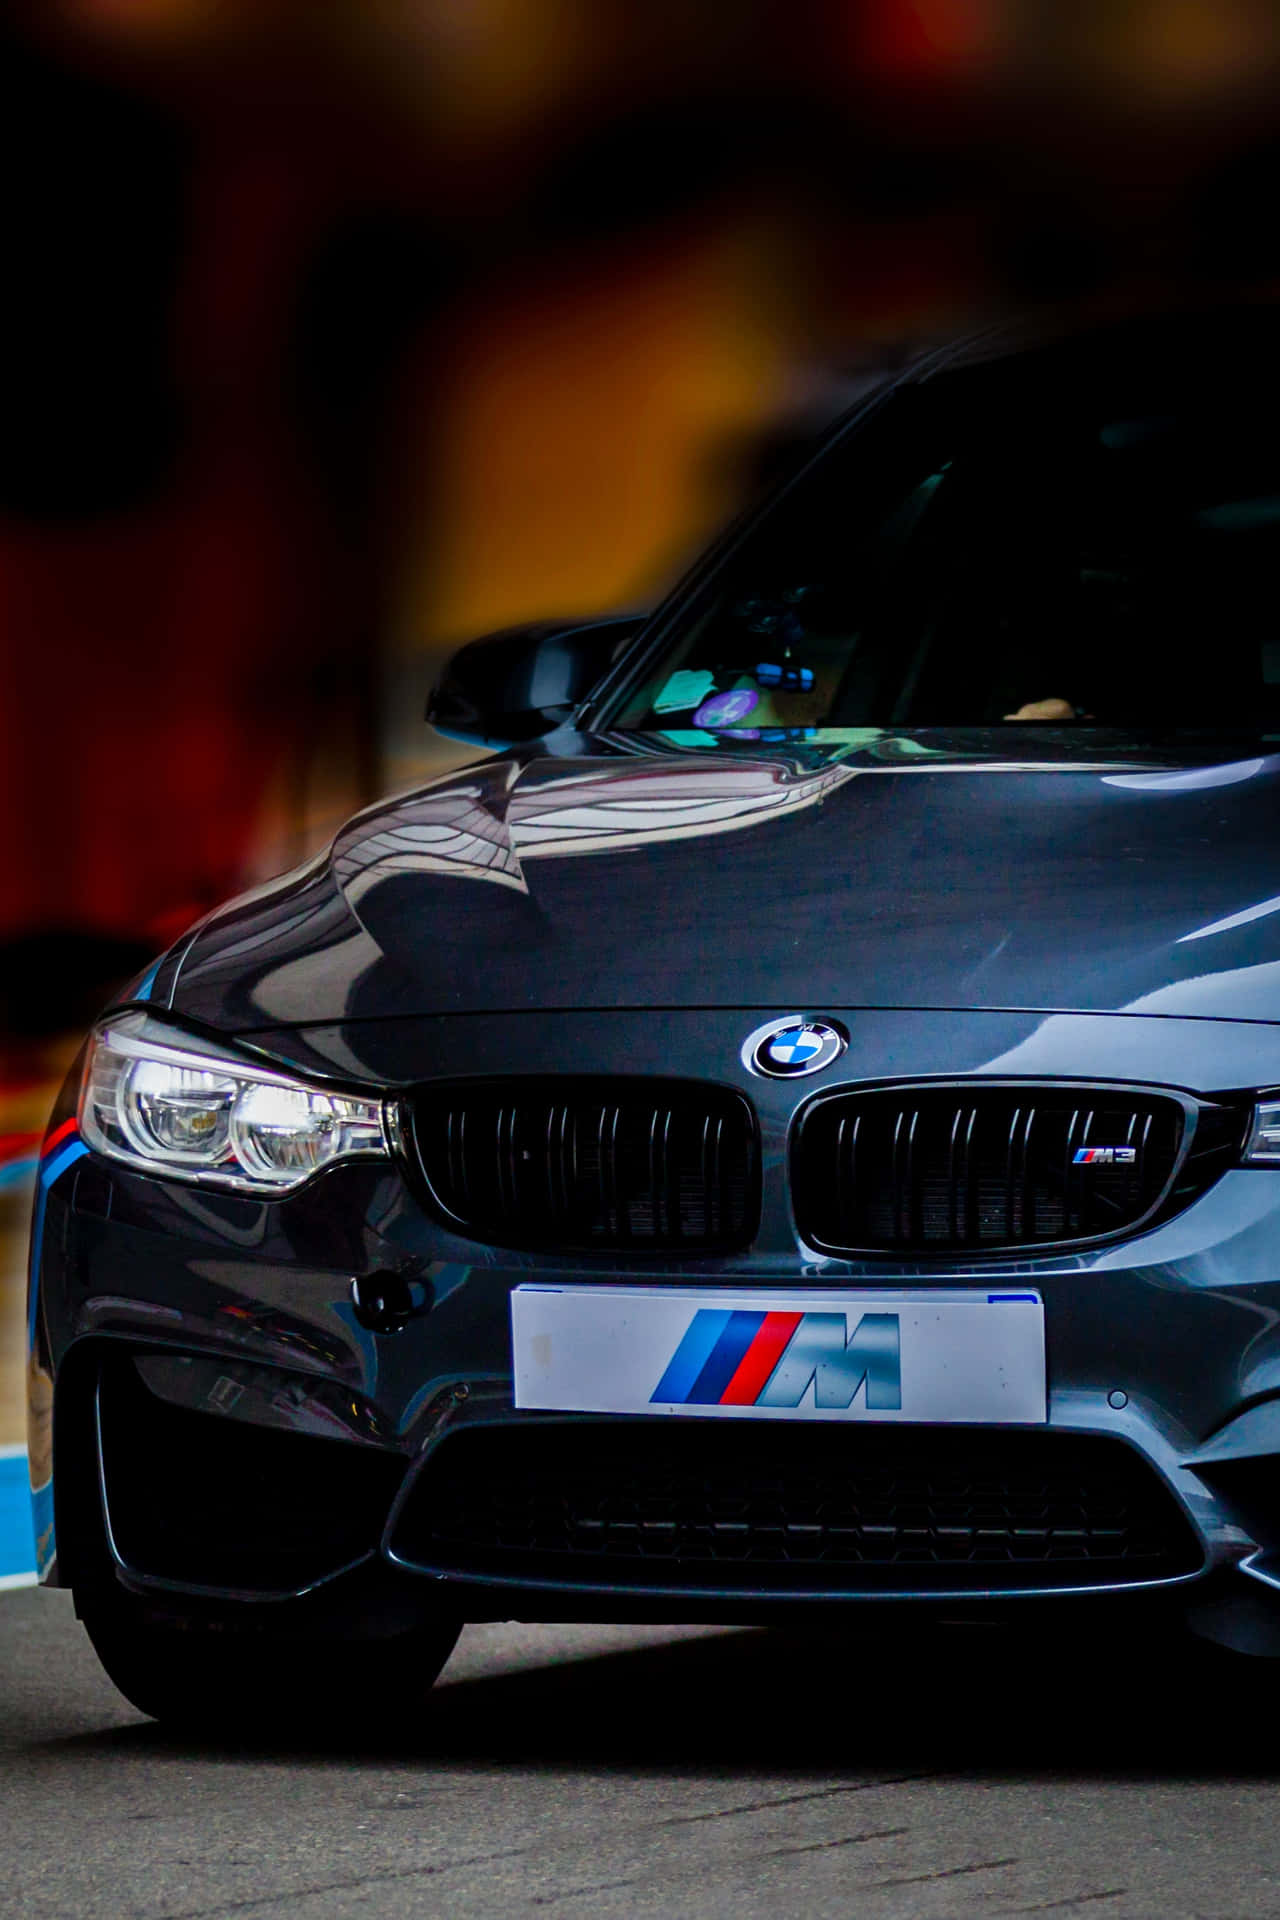 BMW Android tilbyder højteknologiske oplevelser. Wallpaper